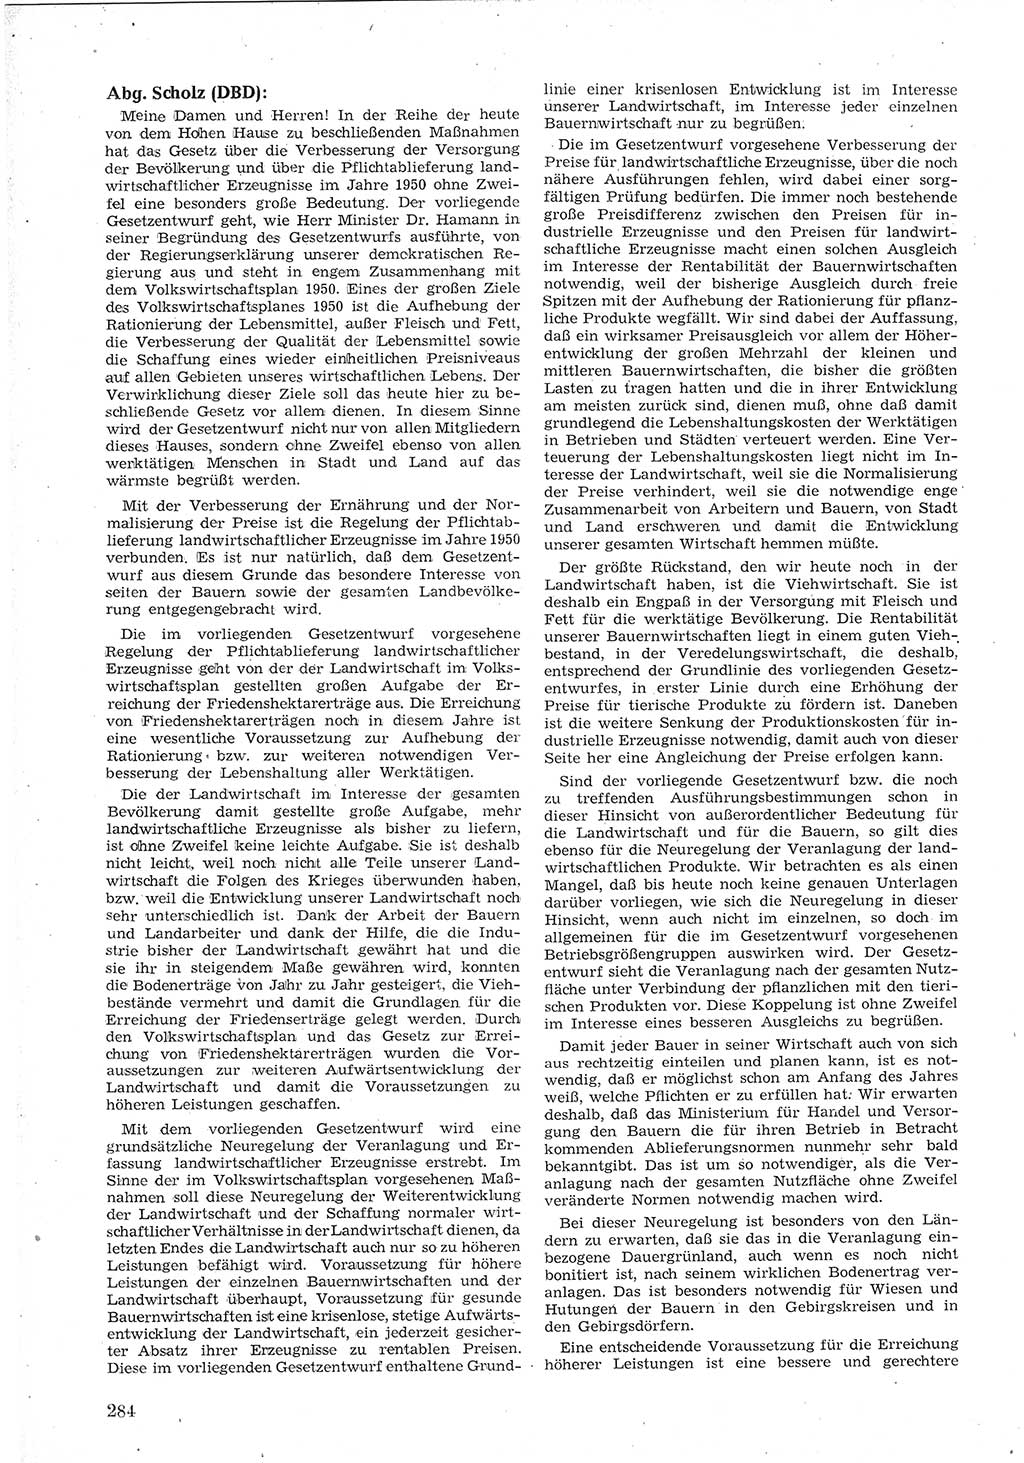 Provisorische Volkskammer (VK) der Deutschen Demokratischen Republik (DDR) 1949-1950, Dokument 298 (Prov. VK DDR 1949-1950, Dok. 298)